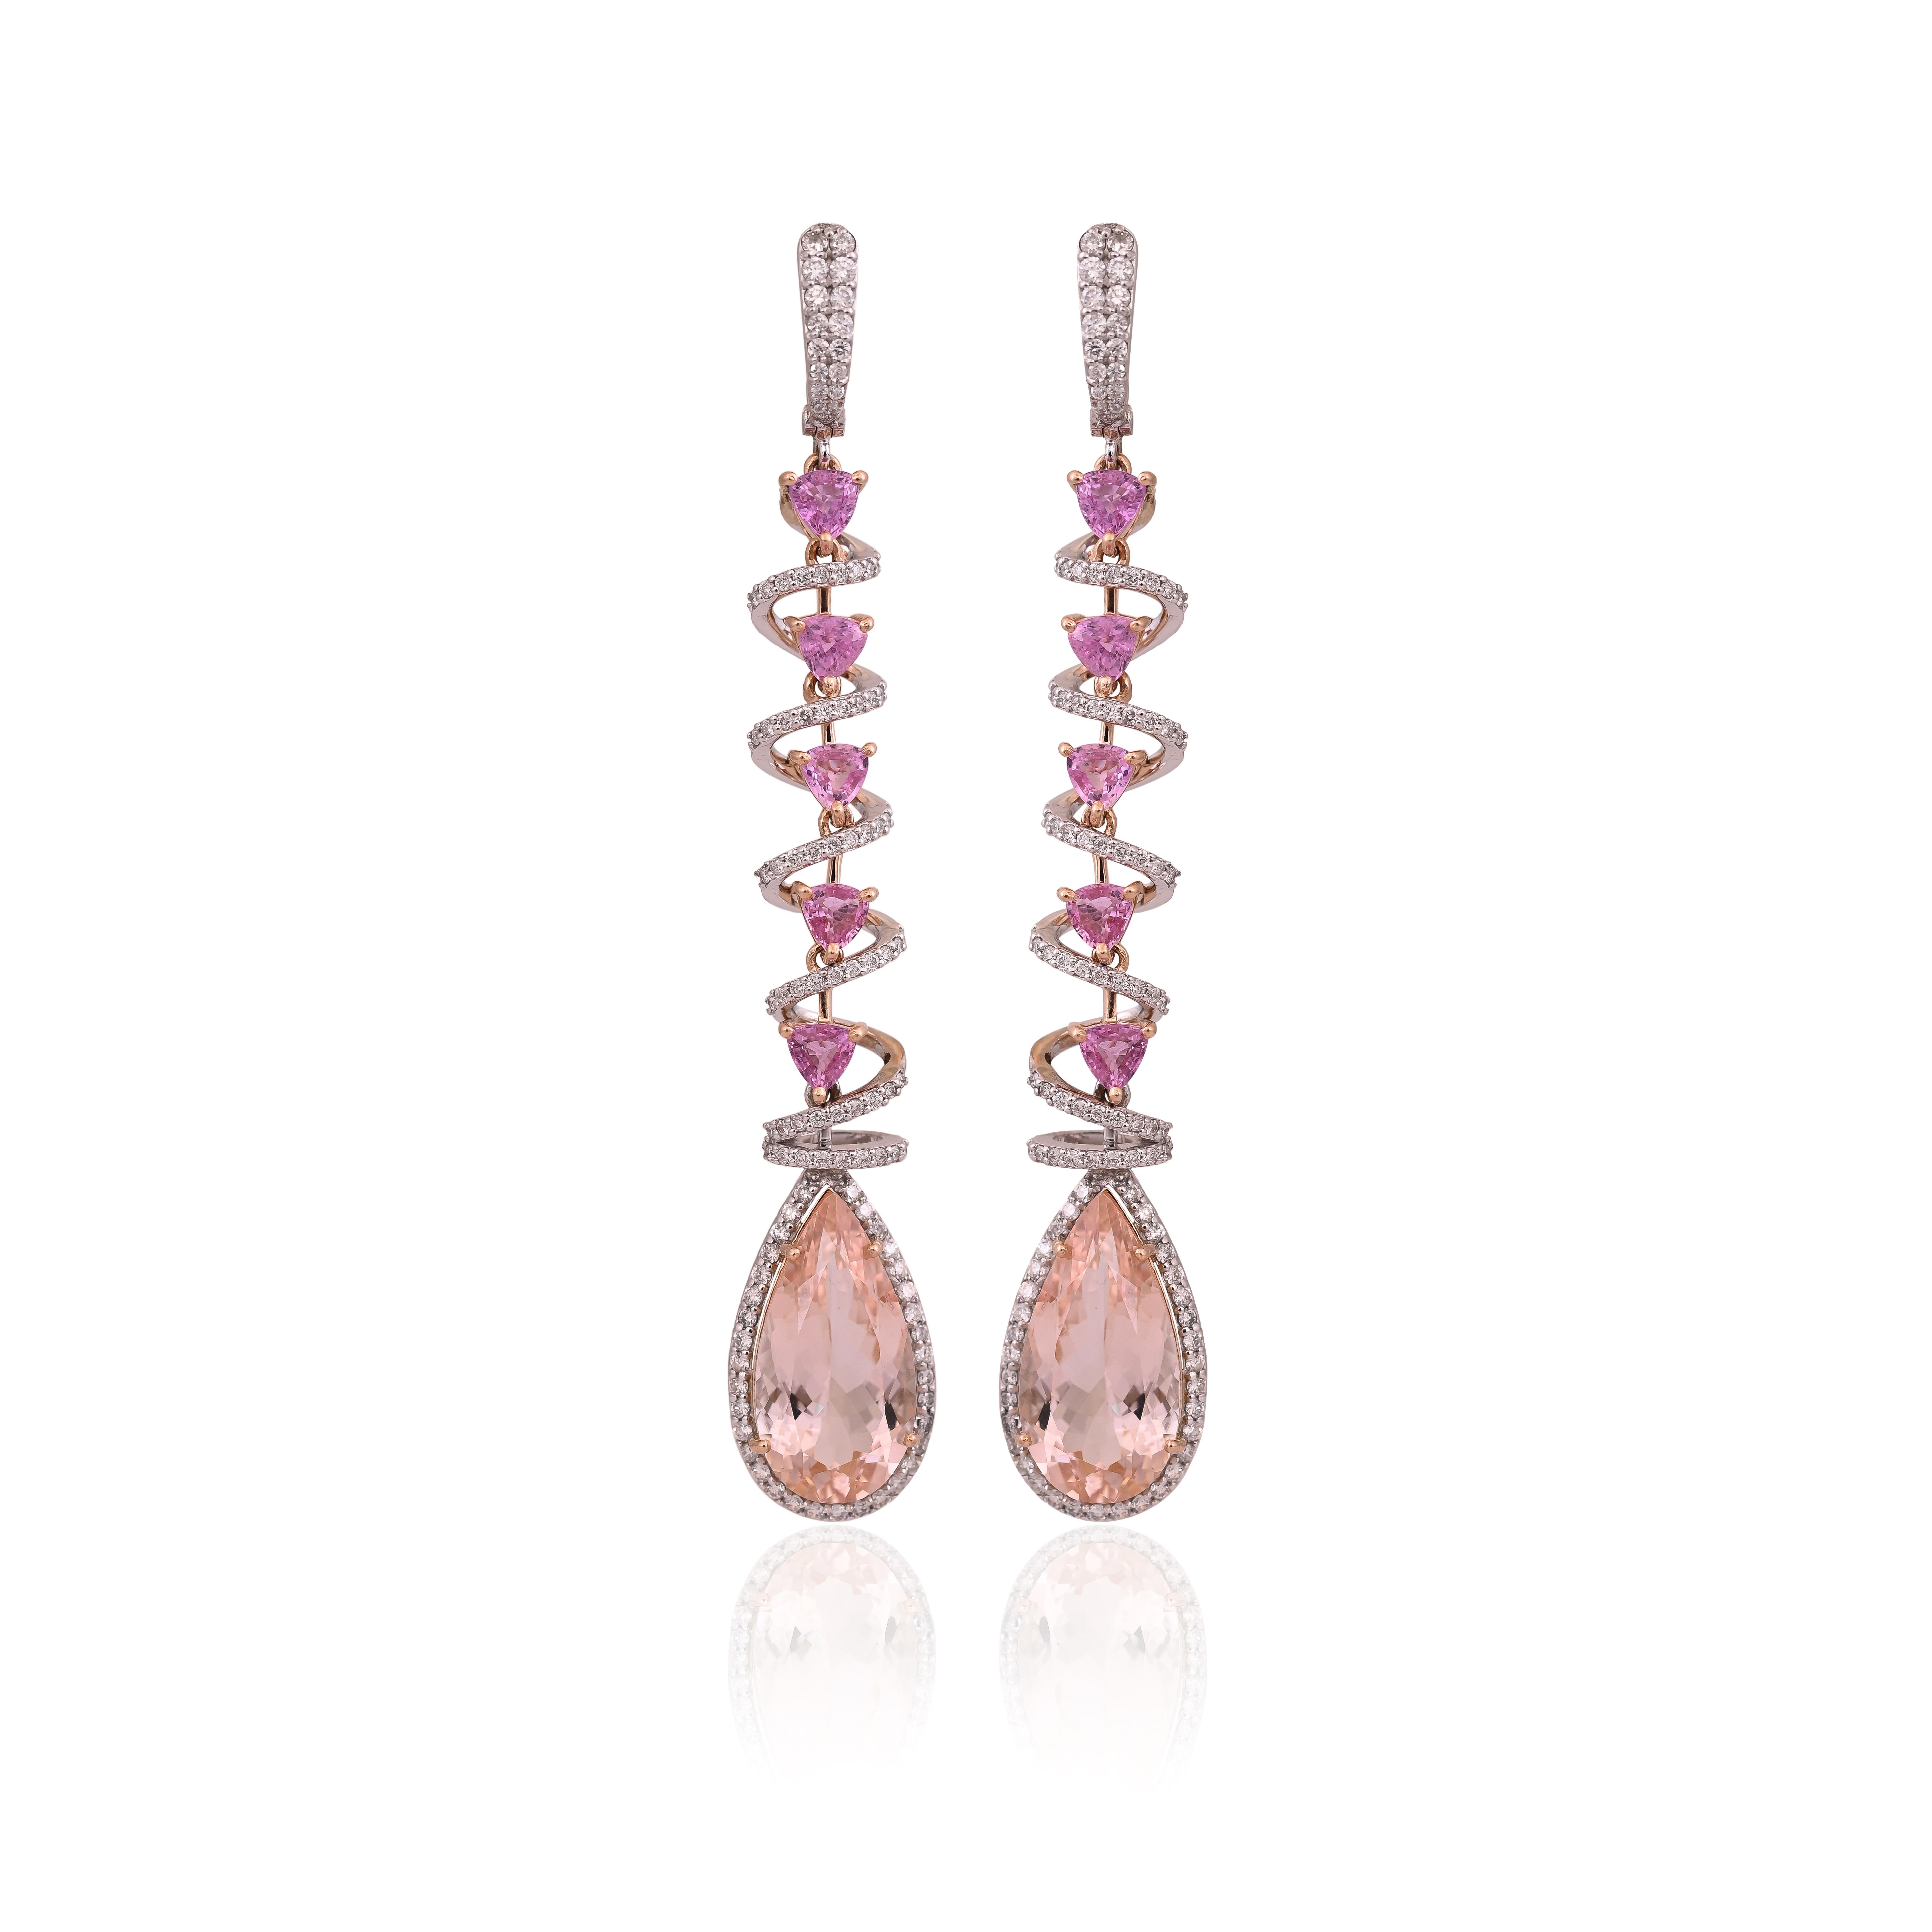 Ein sehr schöner und einzigartiger Morganit & rosa Saphir Kronleuchter Ohrringe in 18K Rose Gold & Diamanten gesetzt. Das Gewicht der birnenförmigen Morganite beträgt 13,14 Karat. Das Gewicht der rosa Saphire beträgt 3.03 Karat. Die rosa Saphire